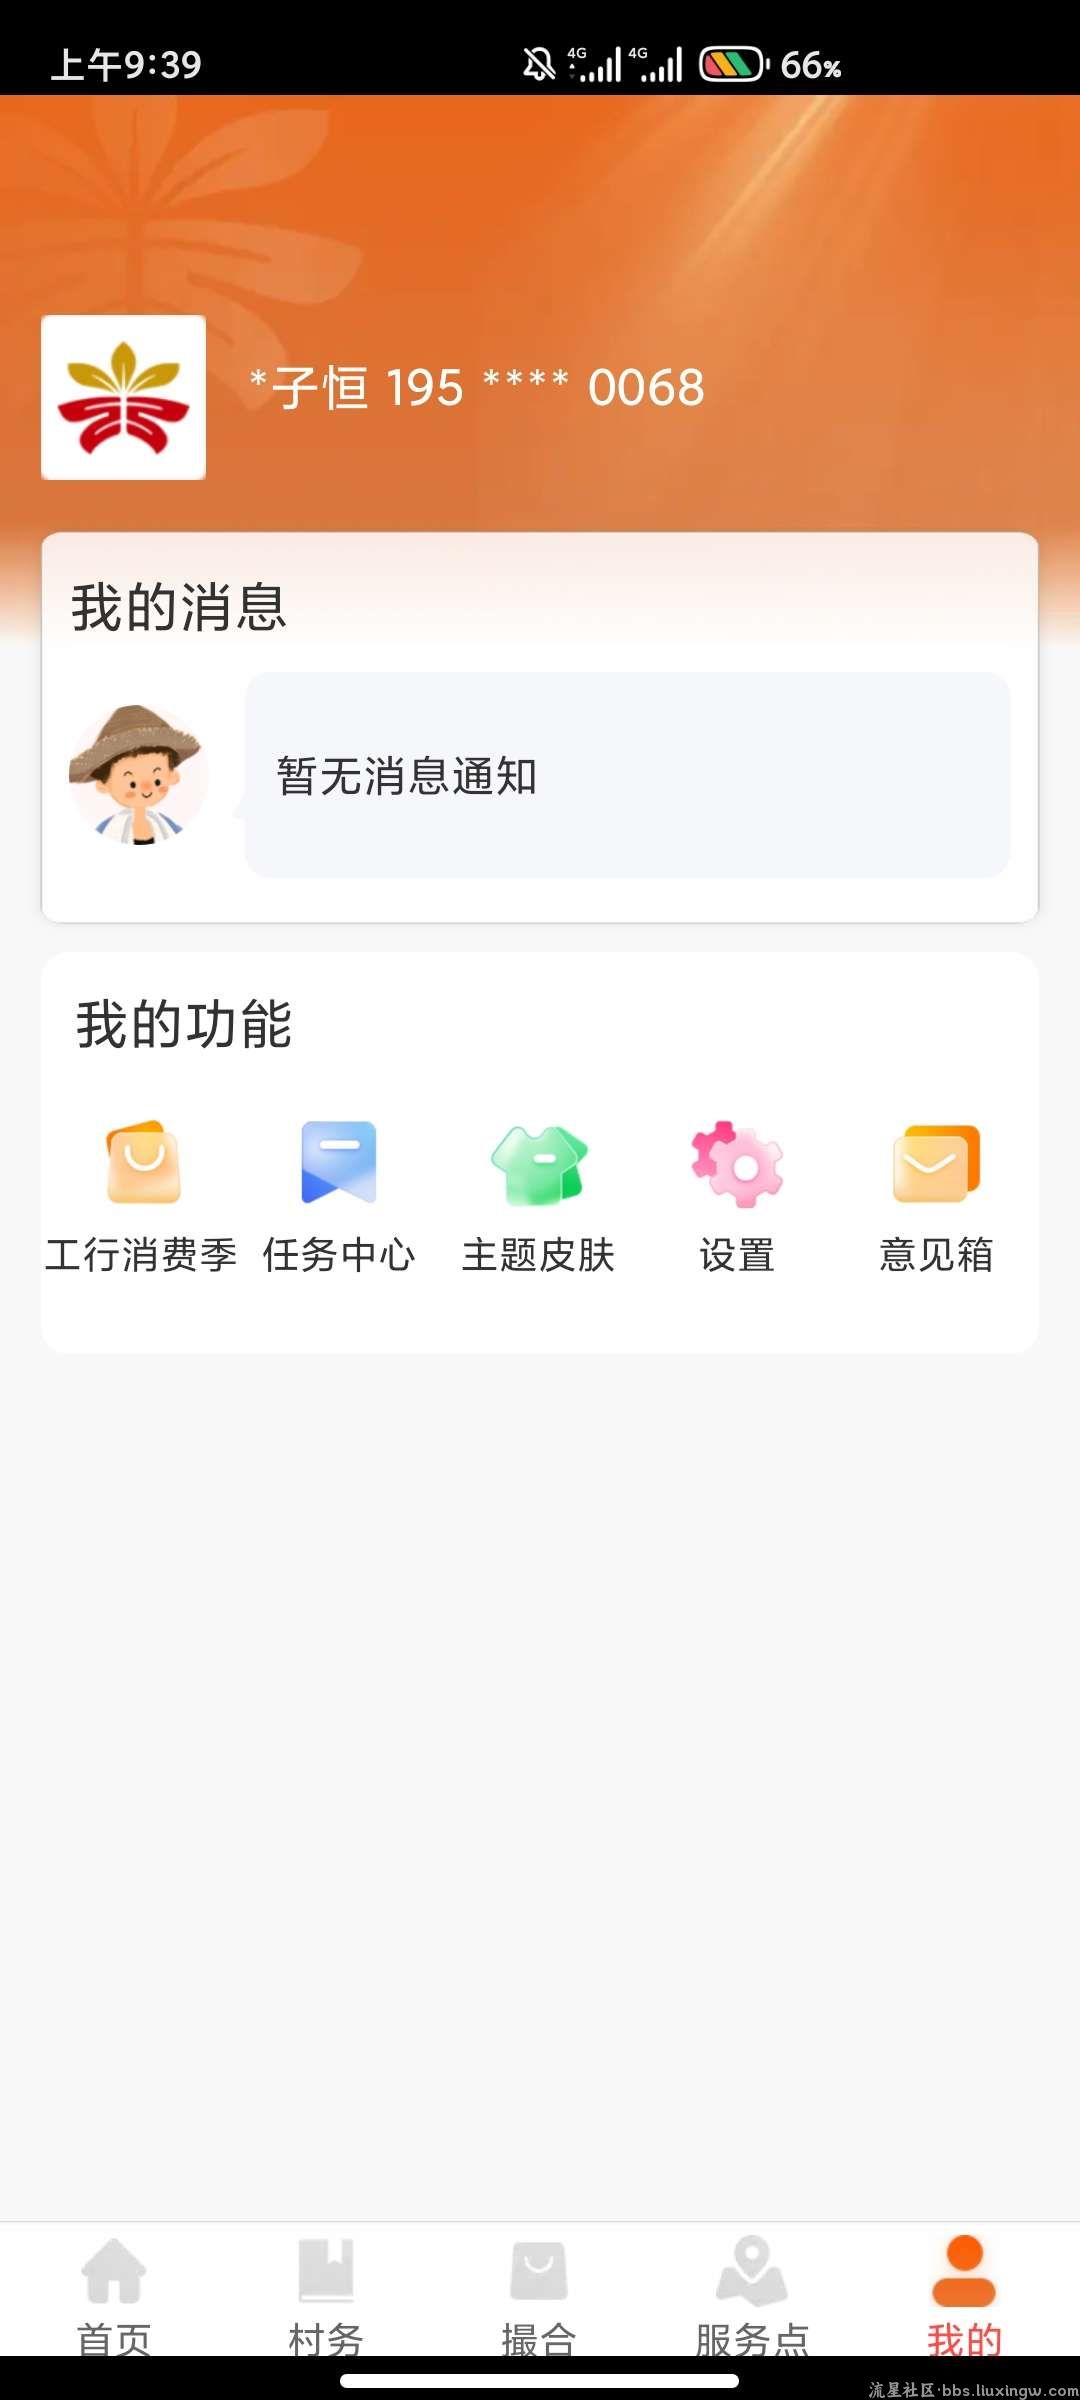 工银兴农通农户认证得微信15立减金